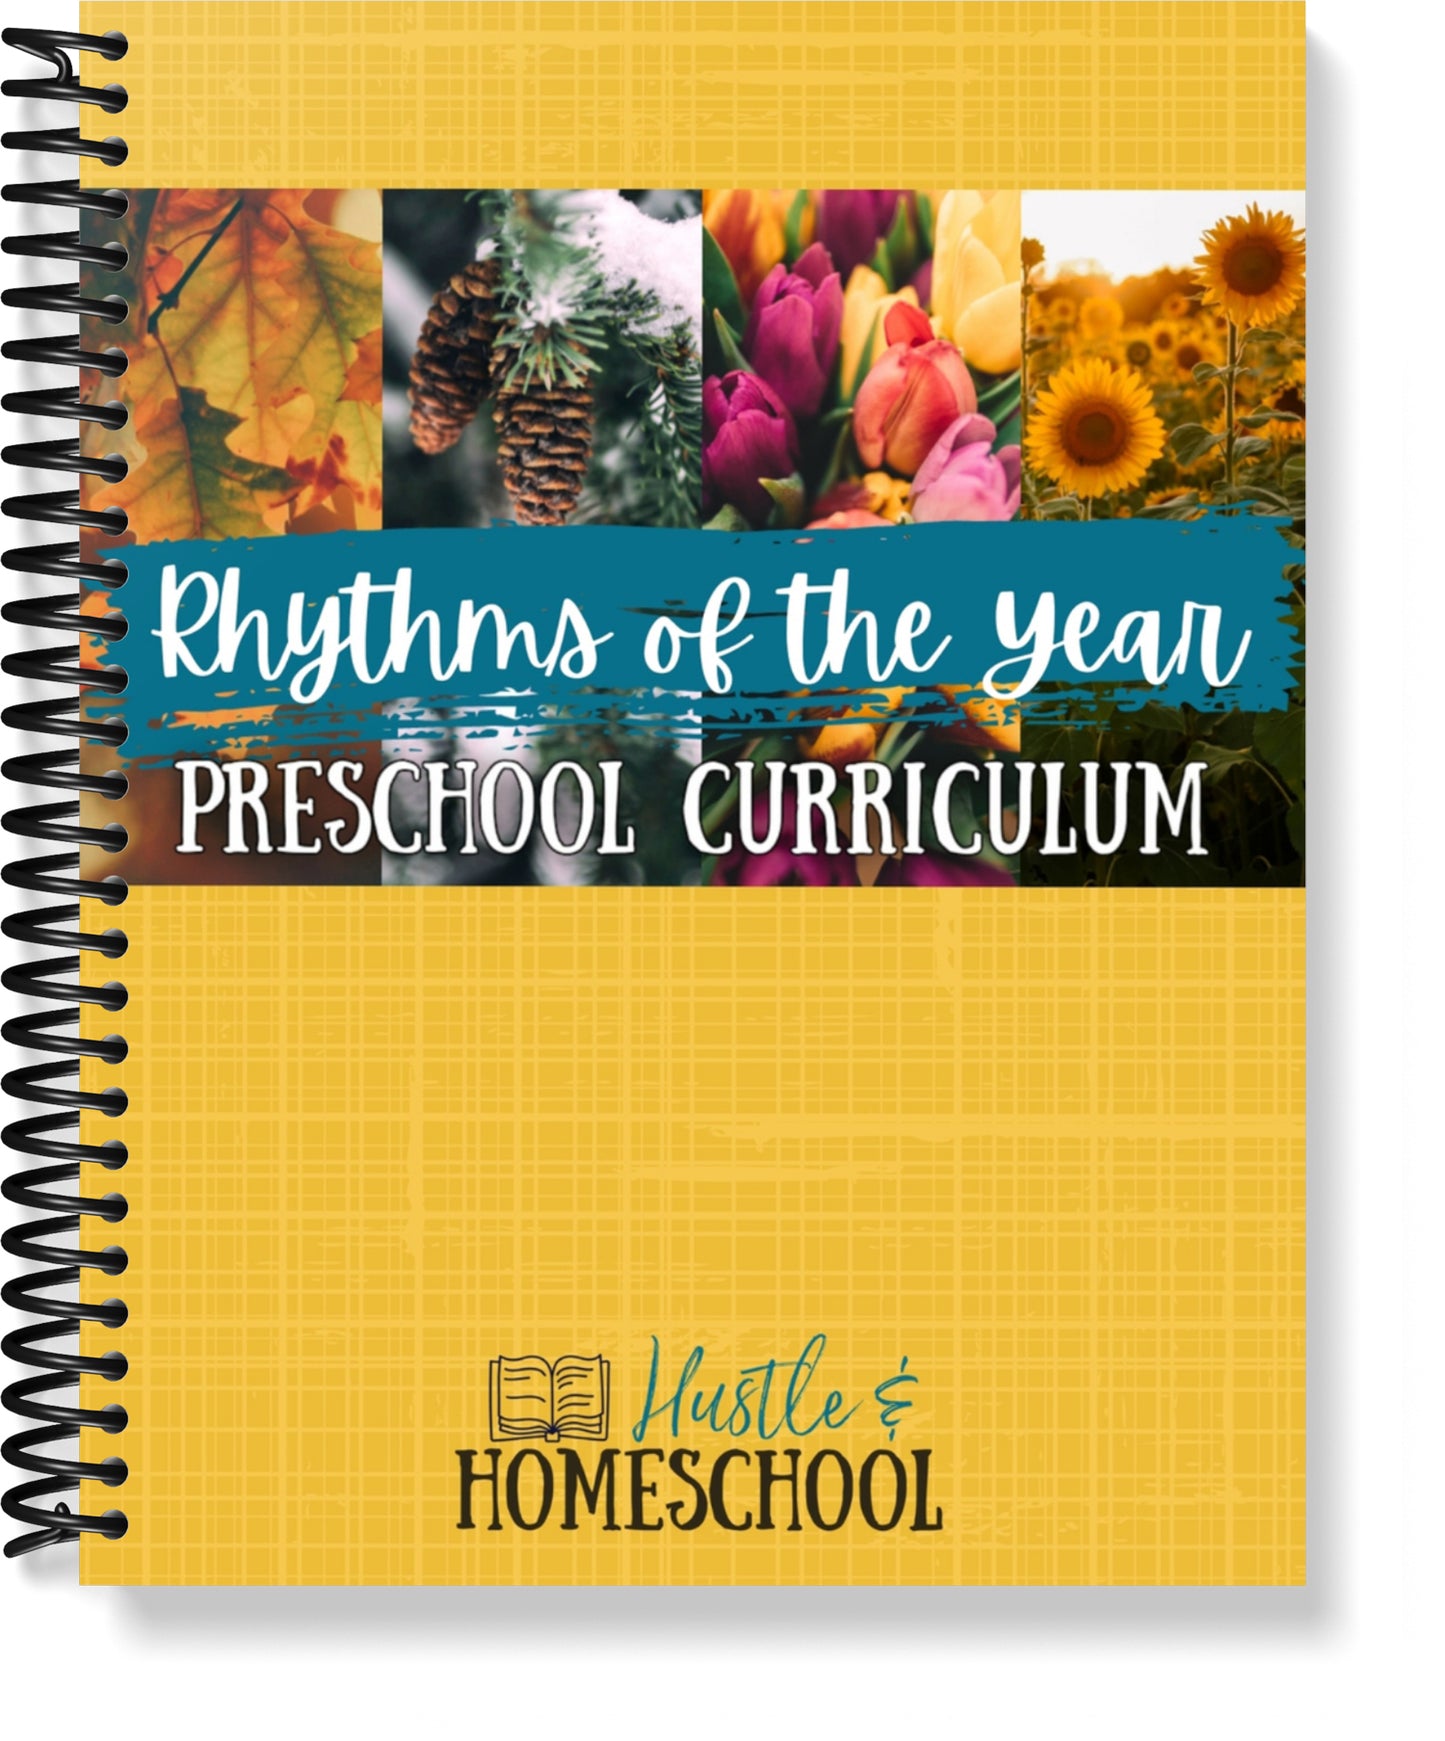 Rhythms of the Year Preschool Curriculum